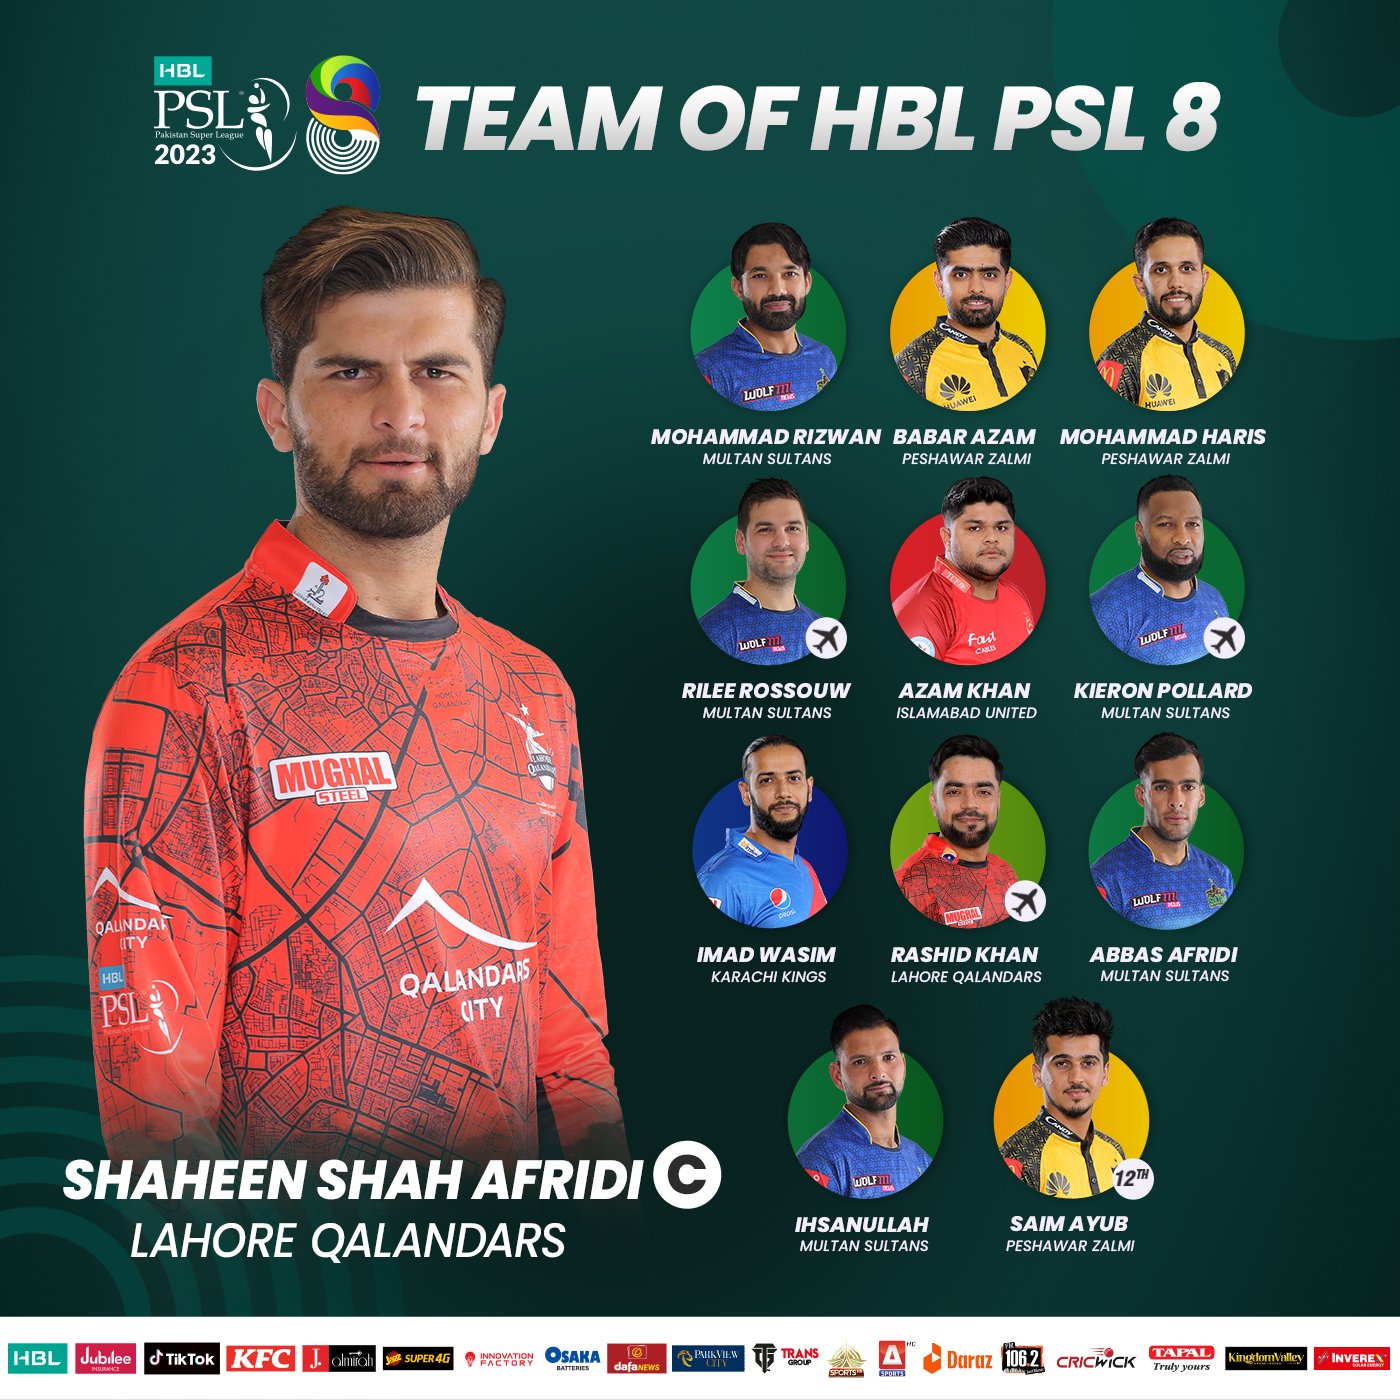 PakistanSuperLeague on Twitter "🌟 HBL PSL 8 TEAM OF THE TOURNAMENT 🌟